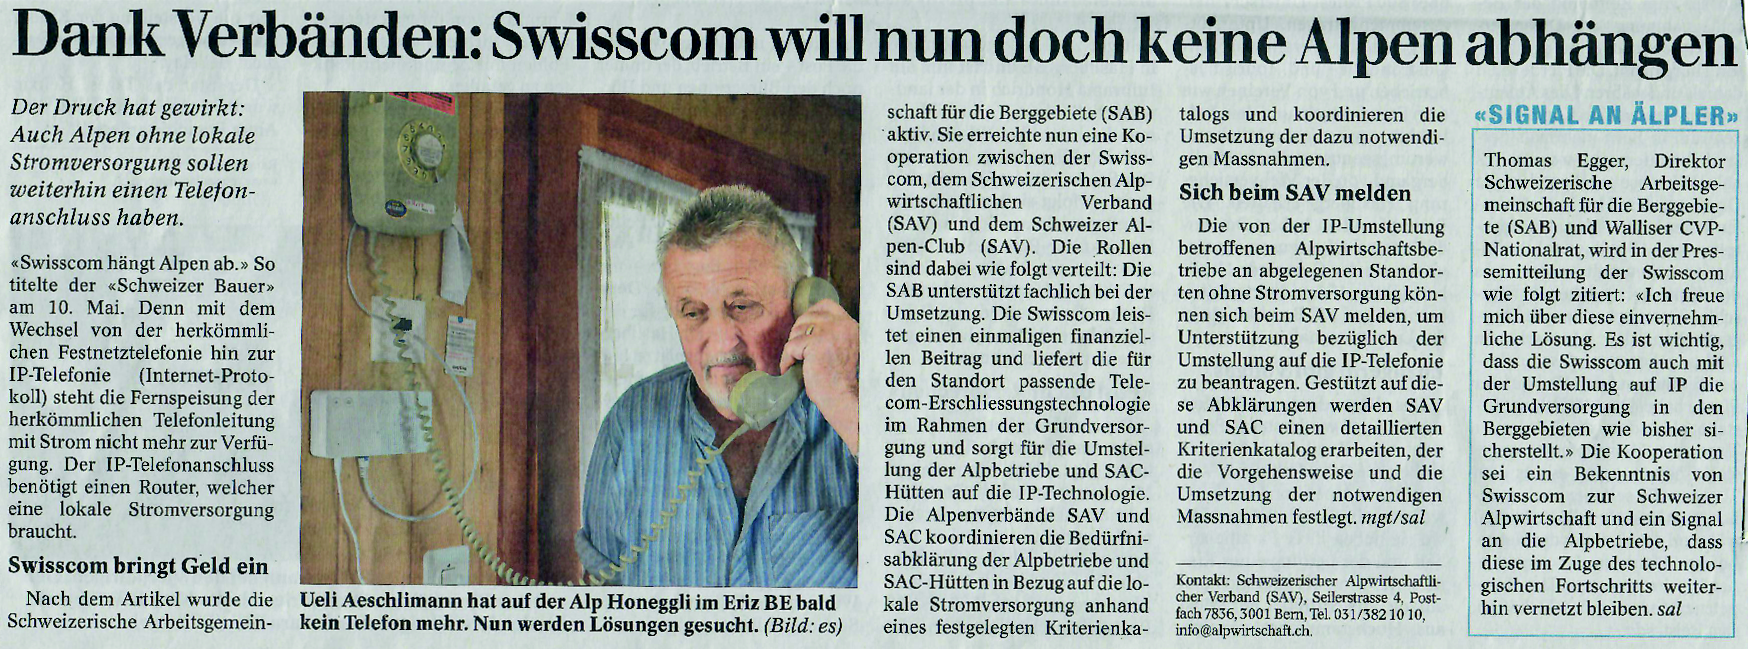 Zeitungsschnipsel aus dem 'Schweizer Bauer' zum Thema 'Swisscom hängt Alpen ab'